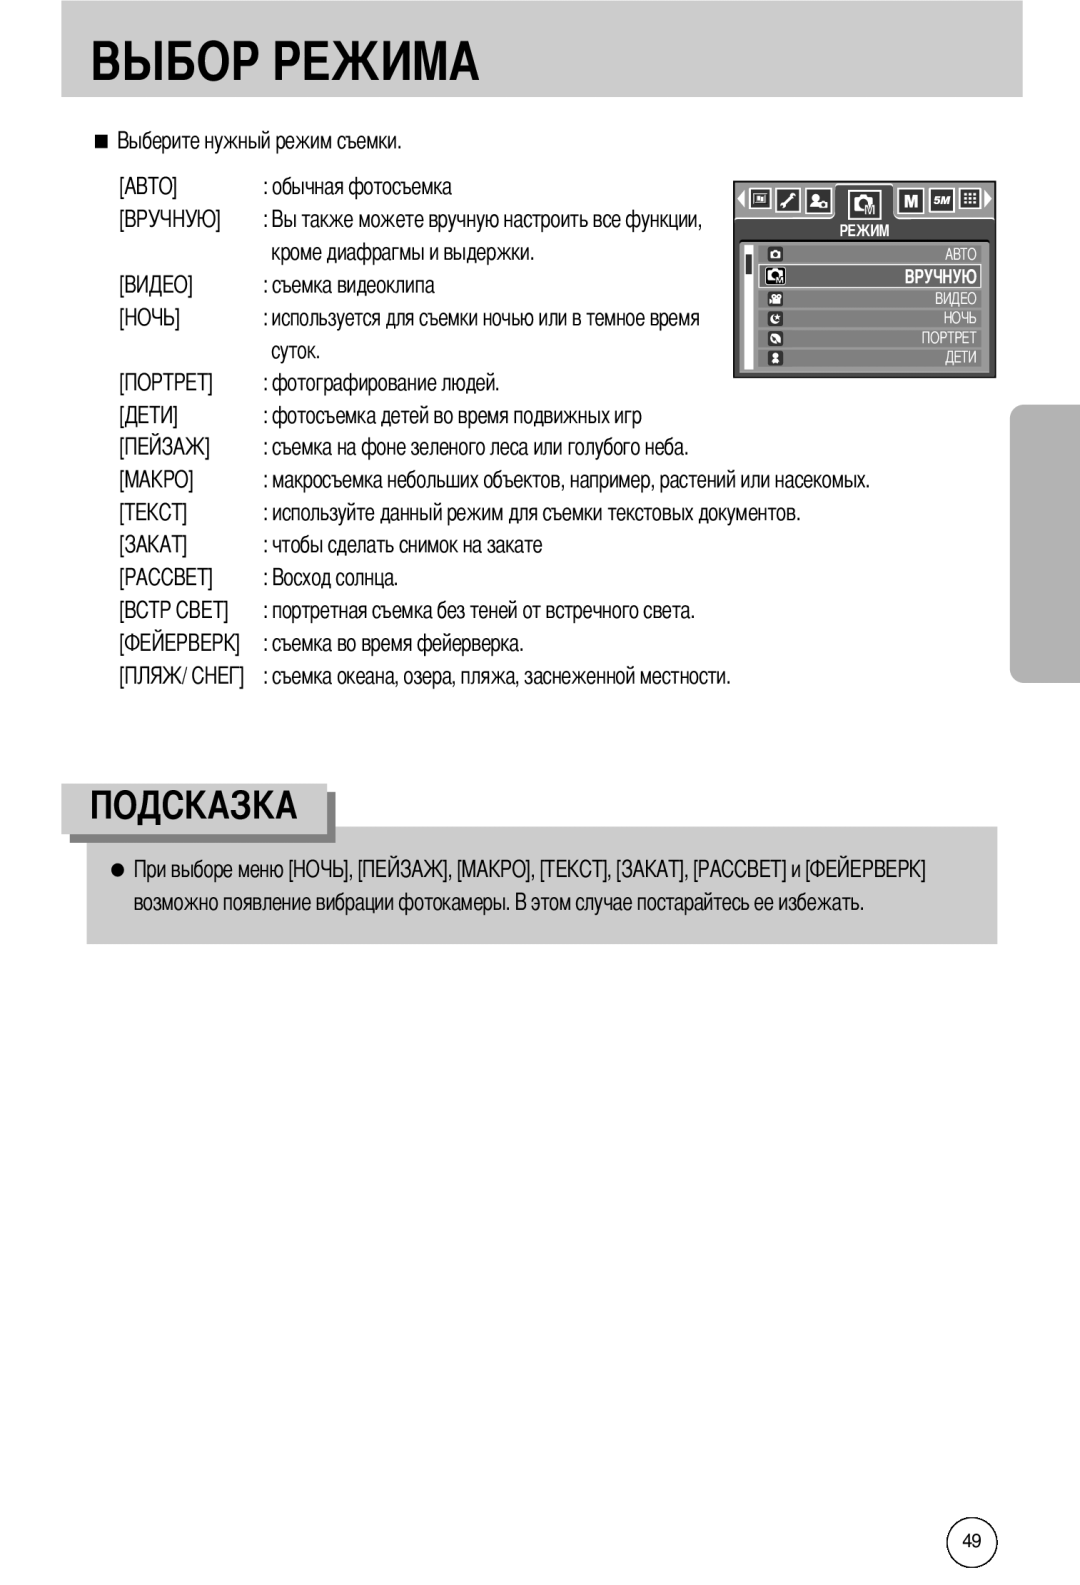 Samsung EC-I50ZZSBB/AS, EC-I50ZZBBA/FR manual обычная фотосъемка, используйте данный режим для съемки текстовых документов 